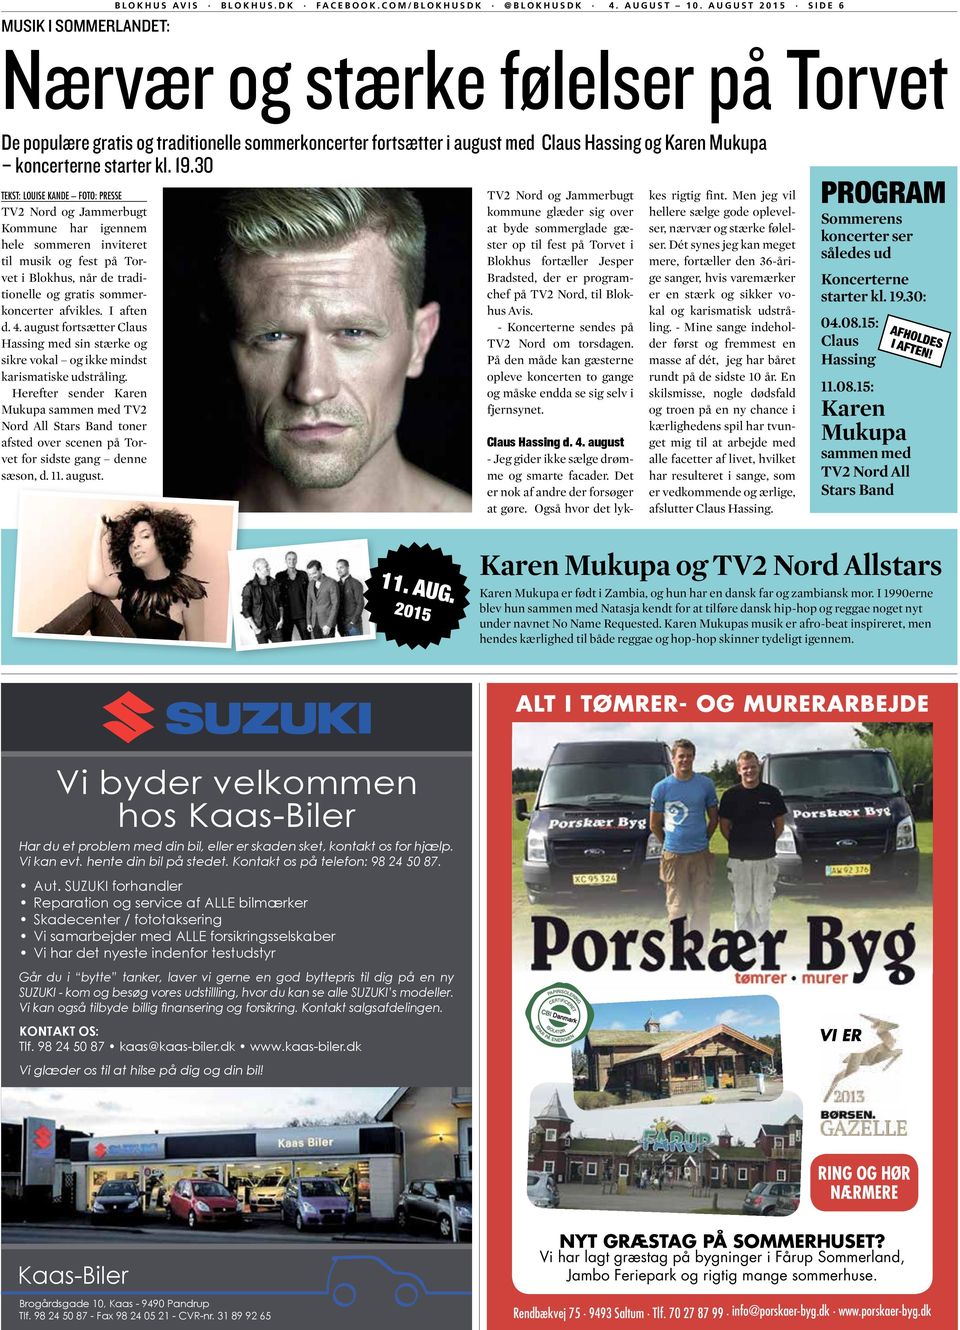 30 TEKST: LOUISE KANDE FOTO: PRESSE TV2 Nord og Jammerbugt Kommune har igennem hele sommeren inviteret til musik og fest på Torvet i Blokhus, når de traditionelle og gratis sommerkoncerter afvikles.